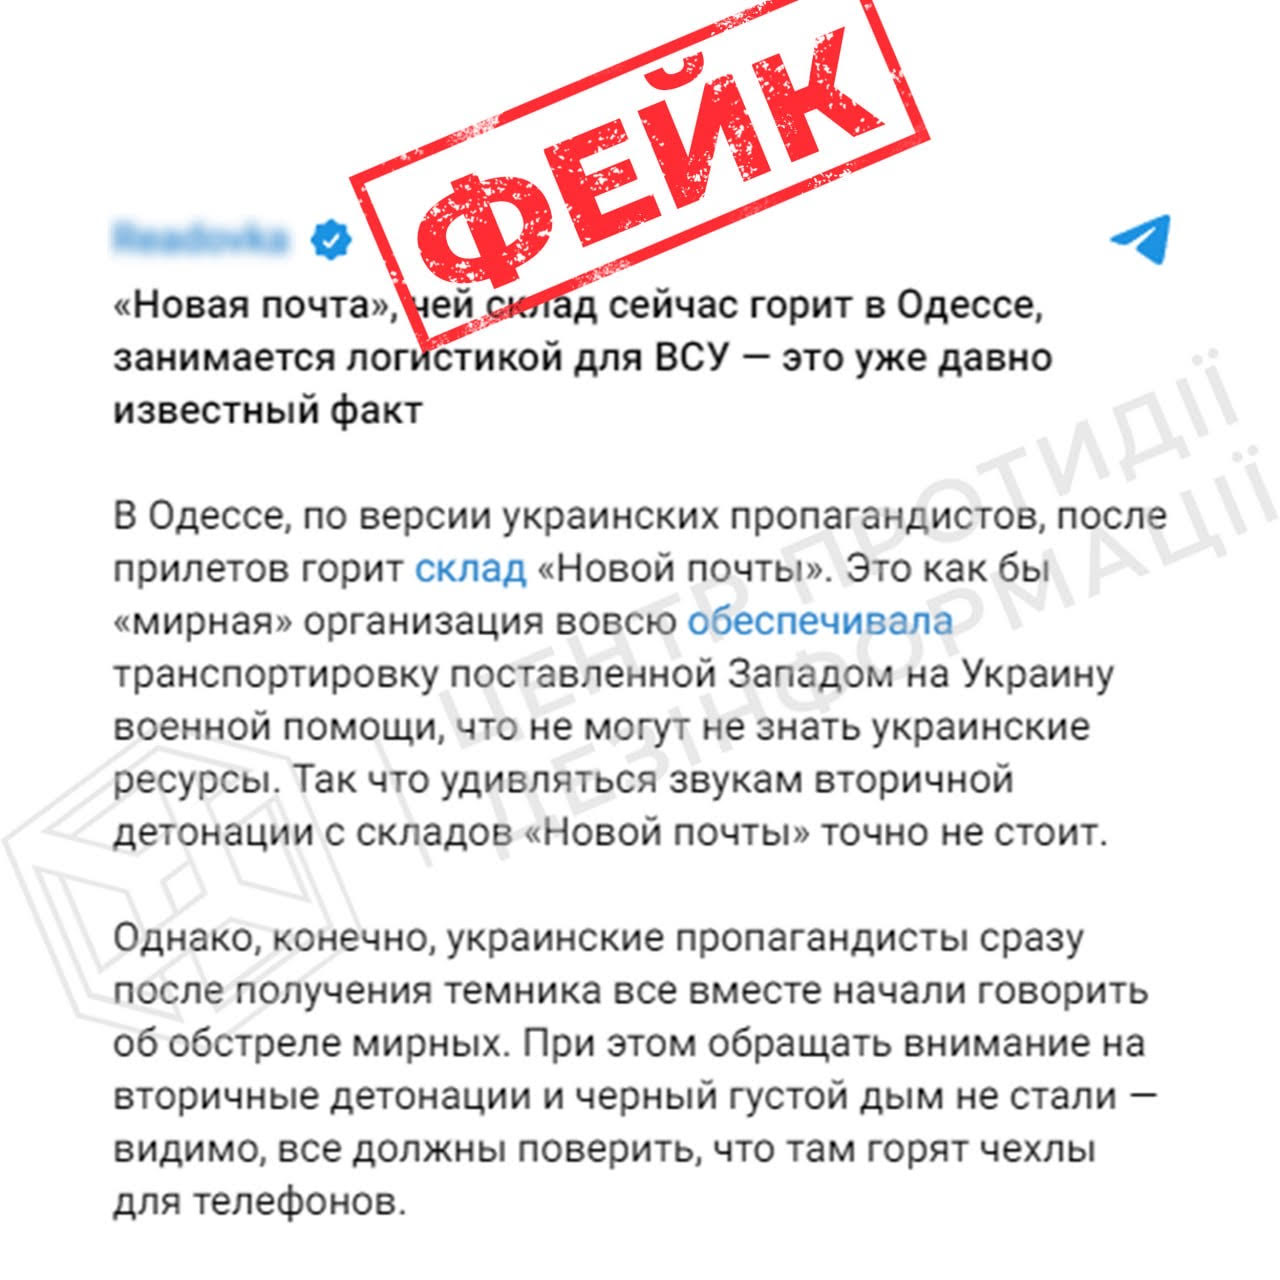 Фейк: Російські пропагандисти “Нову пошту” в Одесі, по якій здійснили удар, називають складом боєприпасів